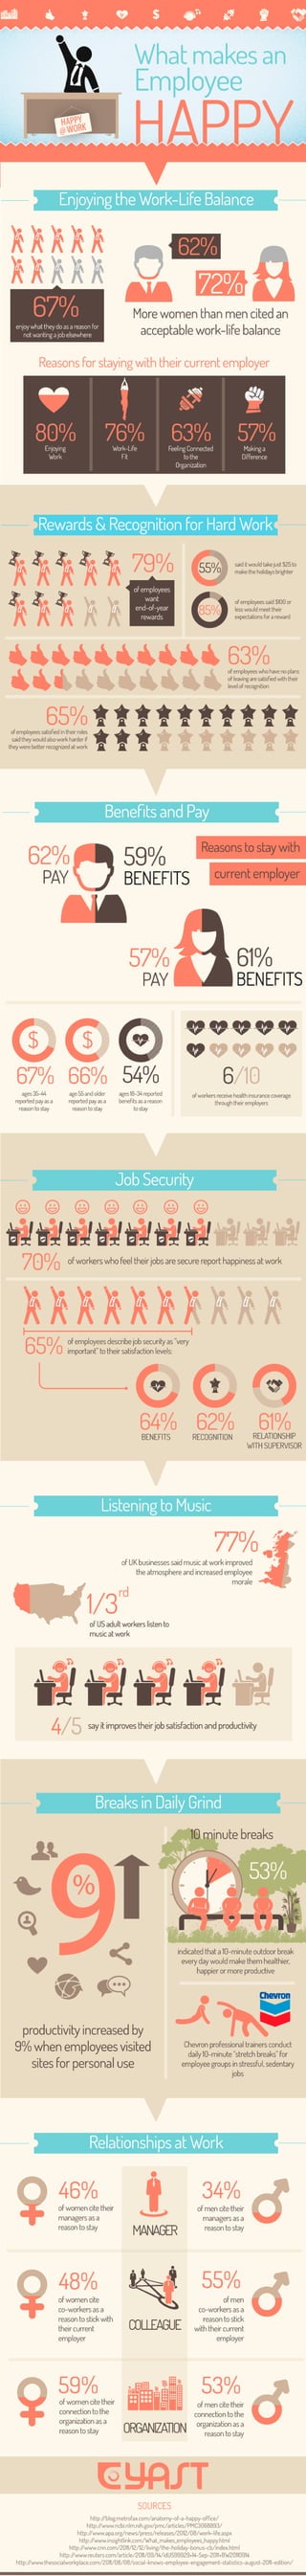 Infographic: Happy Employees